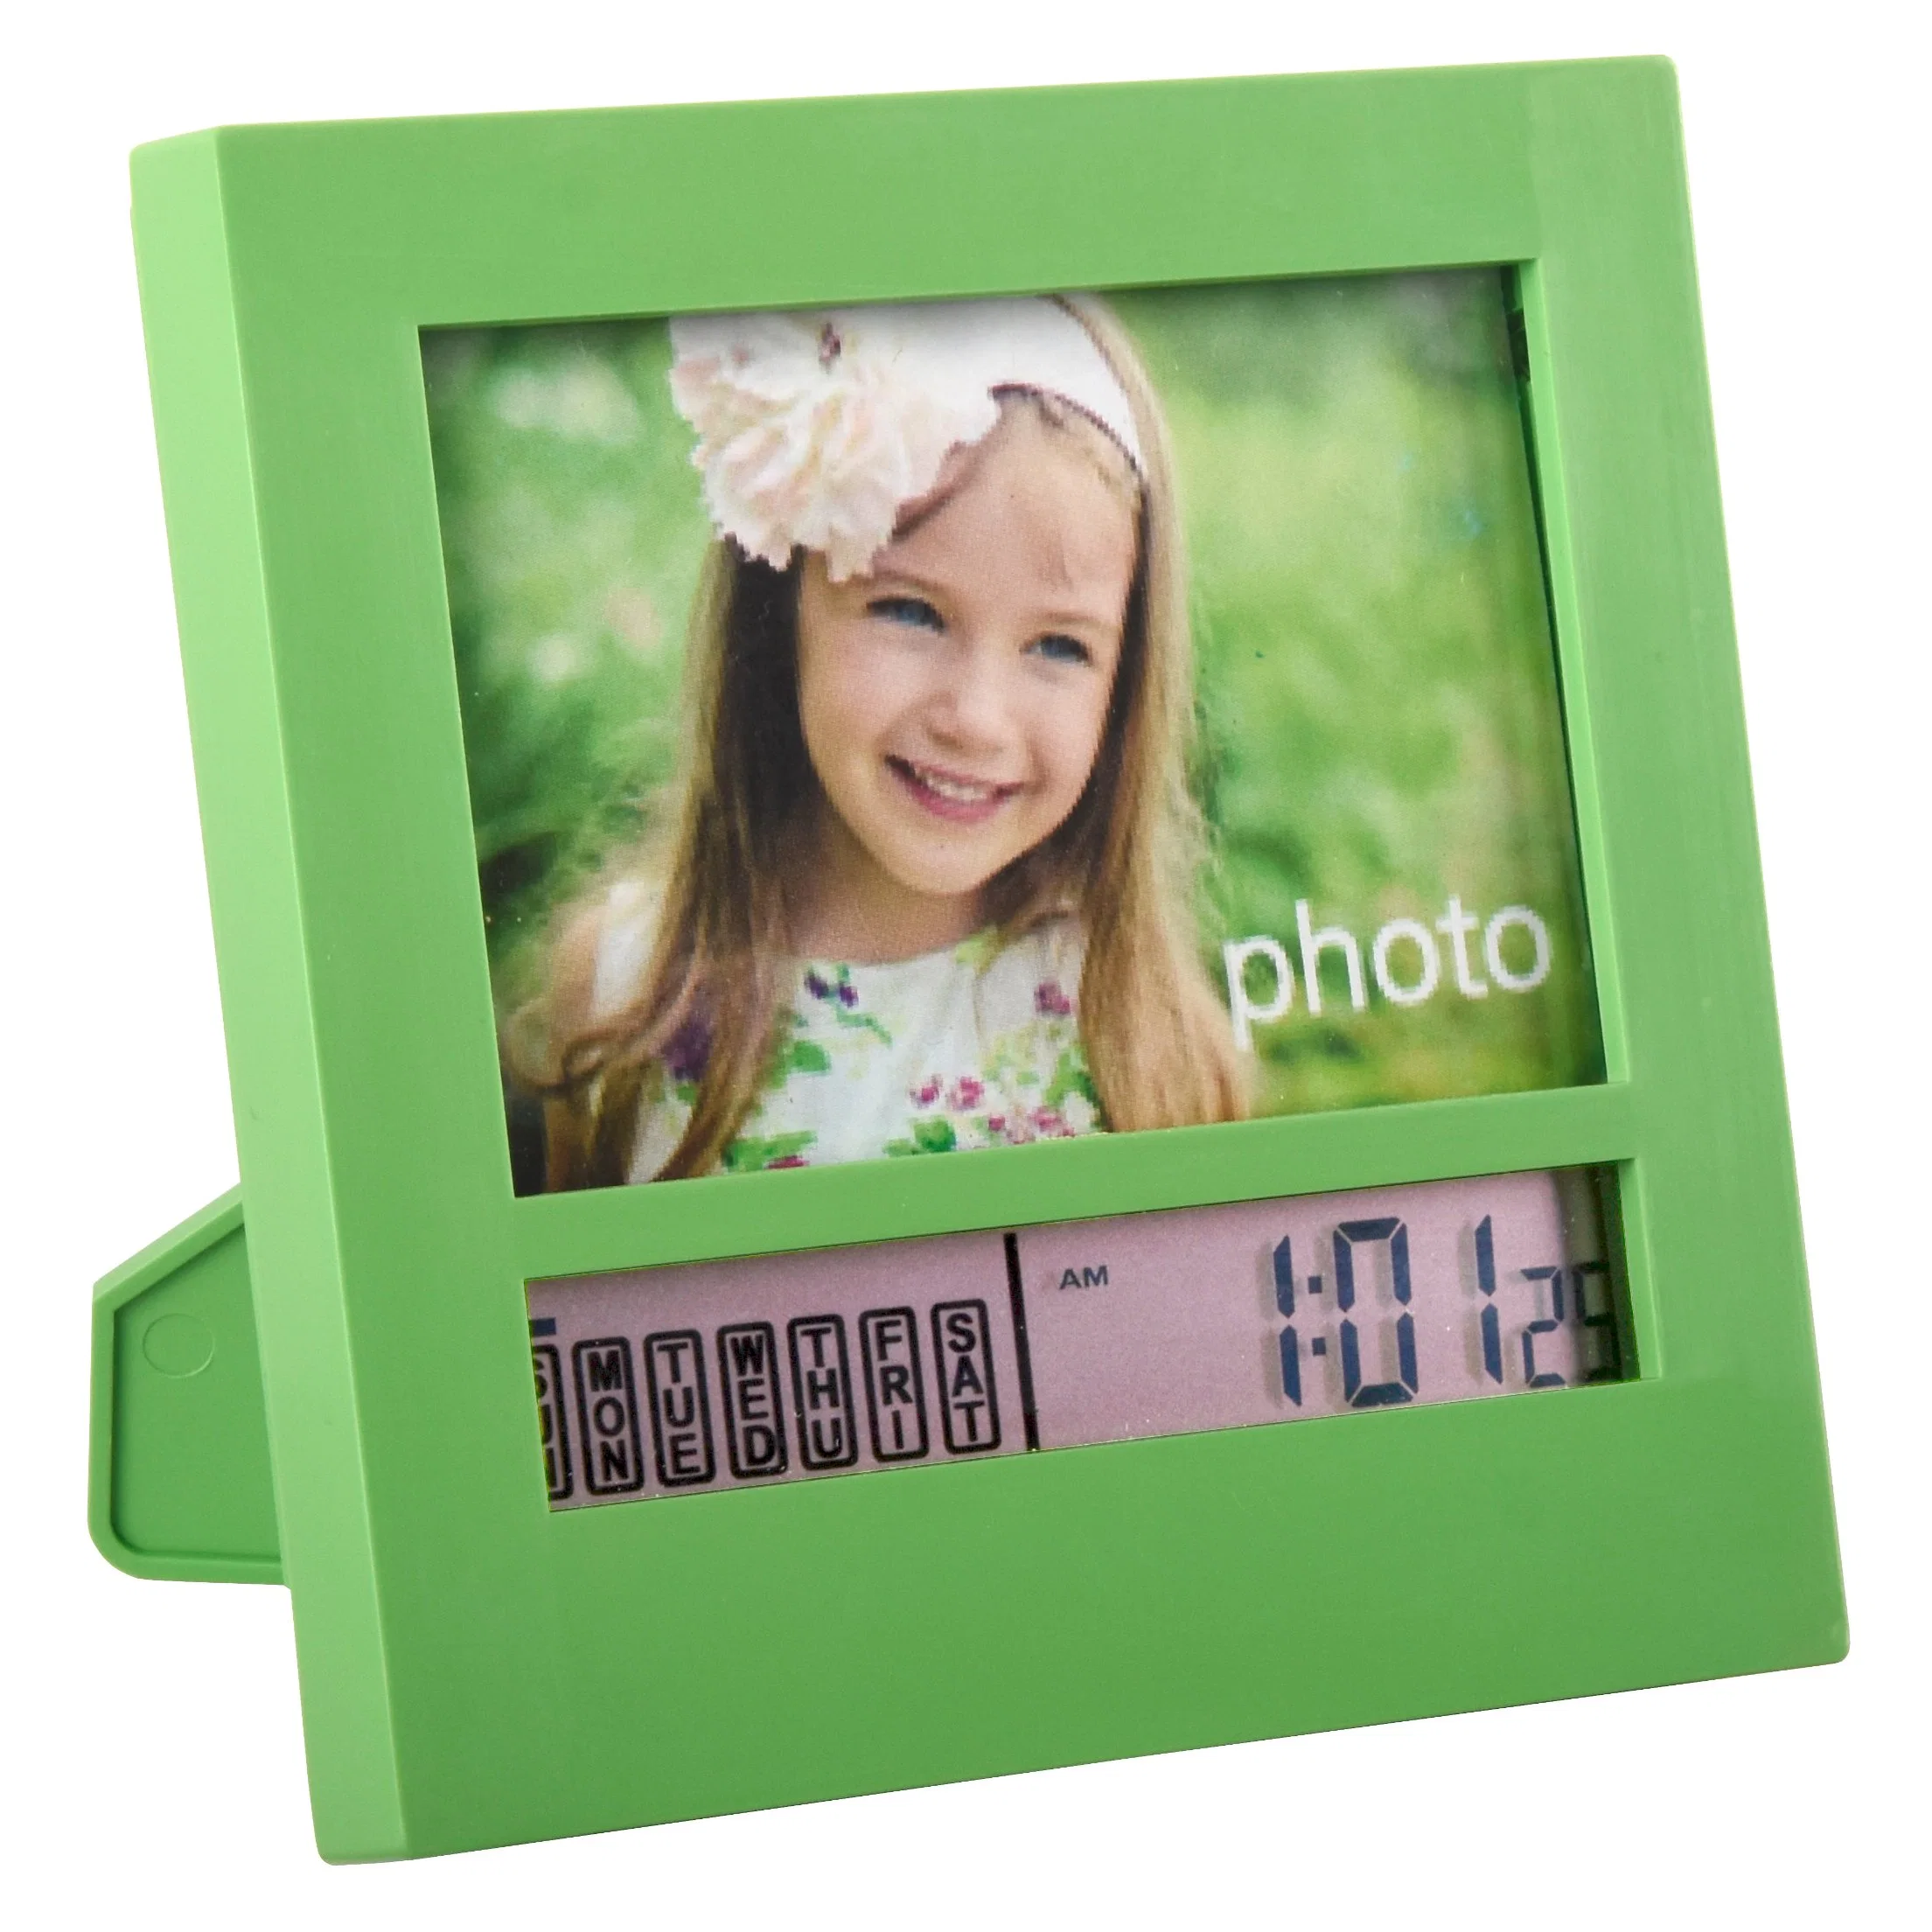 Marco de fotos pantalla LCD Mesa digital alarma Reloj de escritorio función posponer Calendario multicolor, batería operada